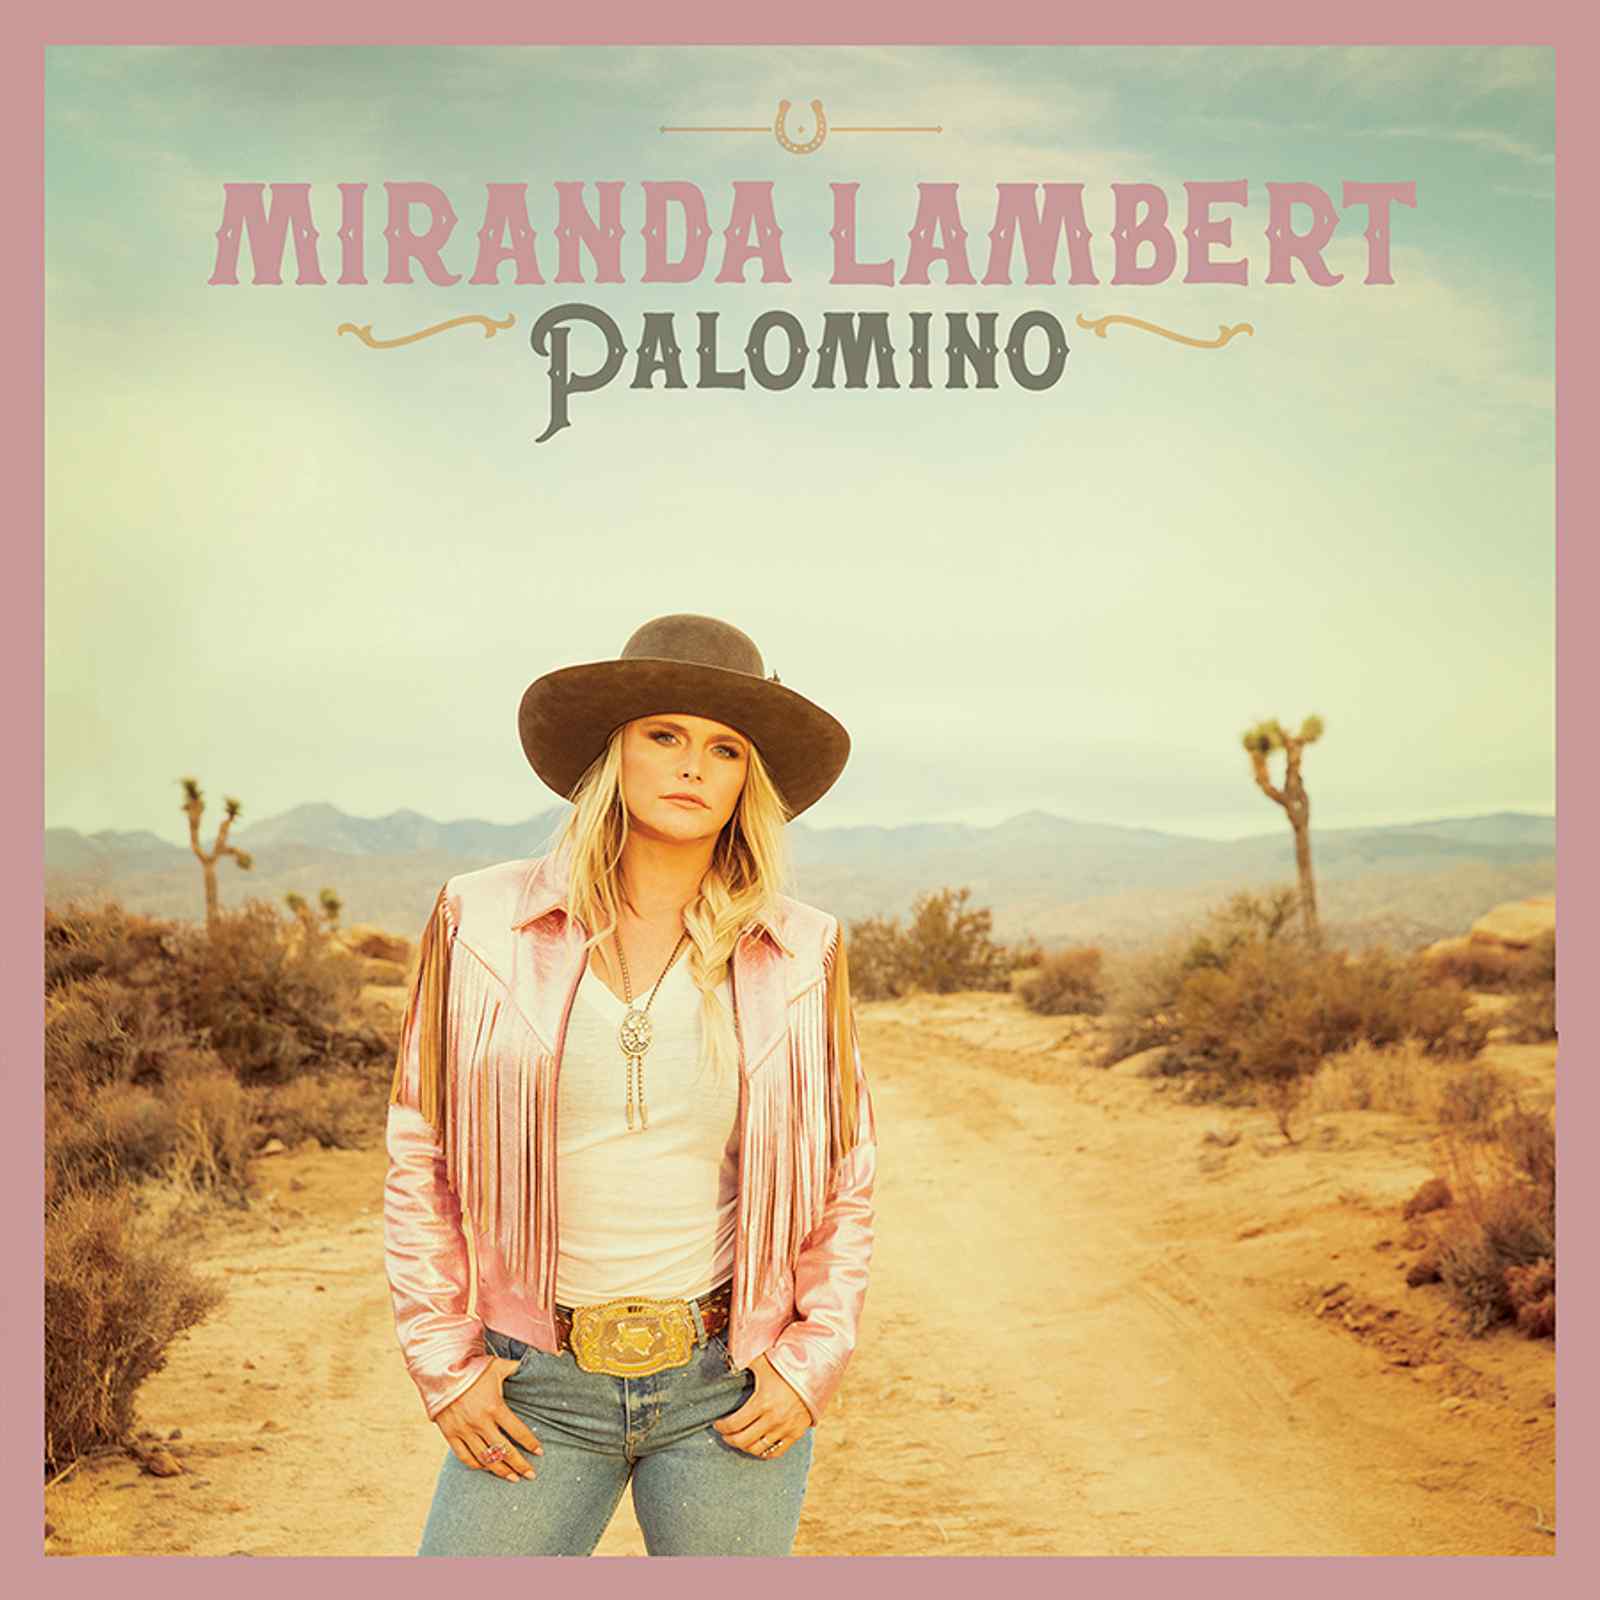 Palomino by Miranda Lambert